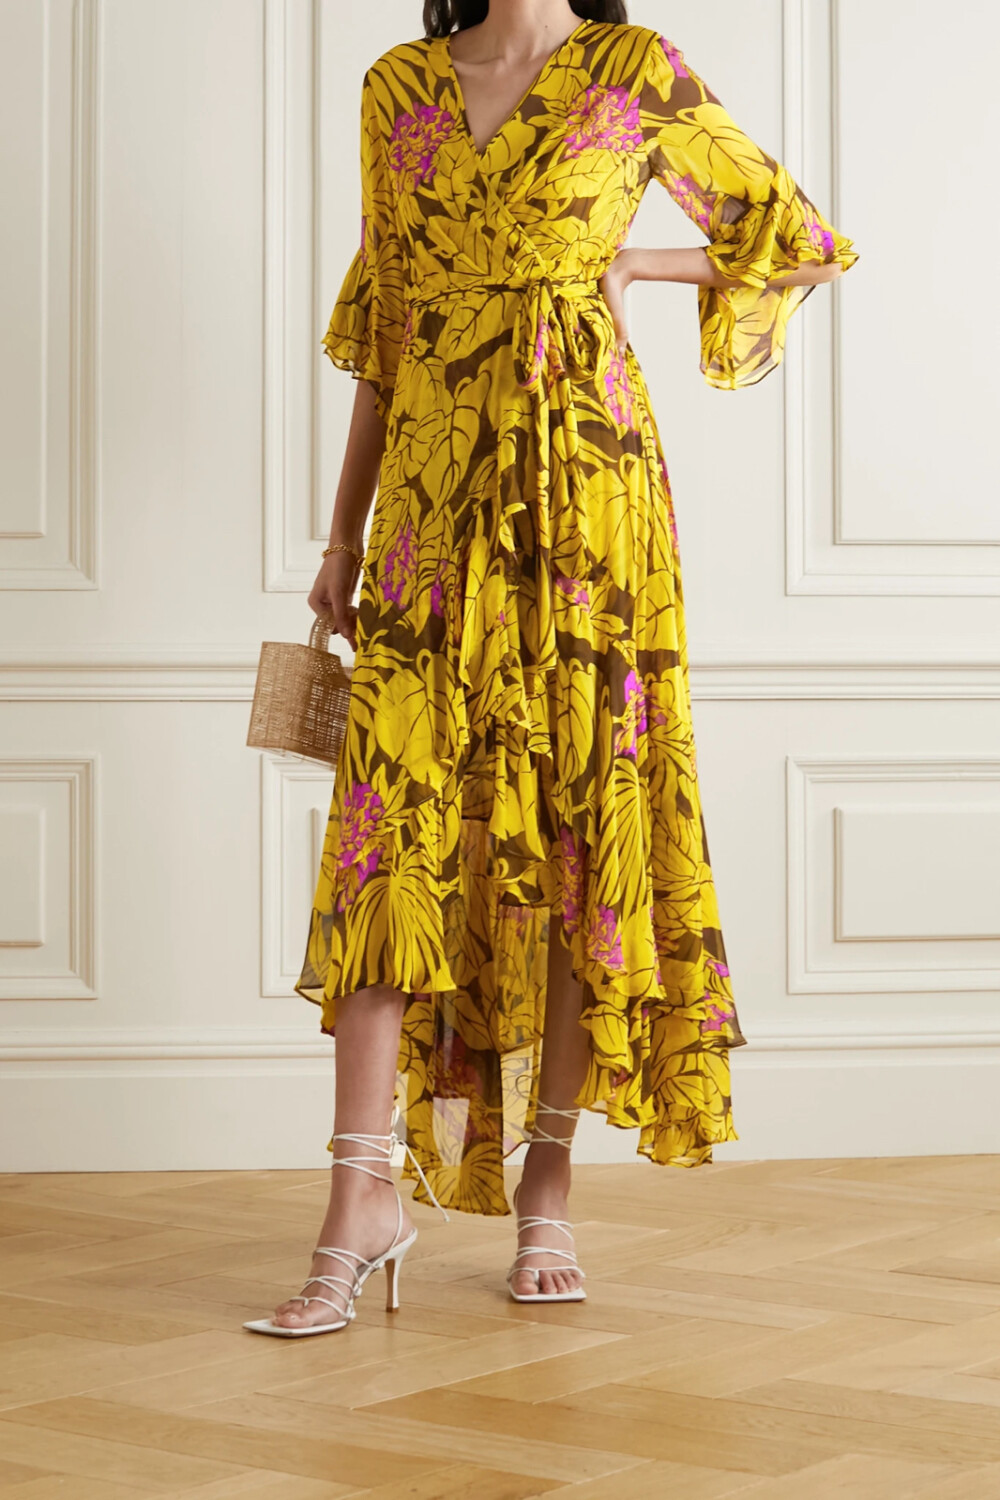 Diane von Furstenberg 这款 “Jean” 连衣裙裁自飘逸的顺纡绉，尺寸醒目的棕榈叶与粉色花朵图案交相掩映，起伏的荷叶边为裹身裙型更添柔美韵味。衣身稍稍透肤，其内的可卸式衬裙可防止走光。